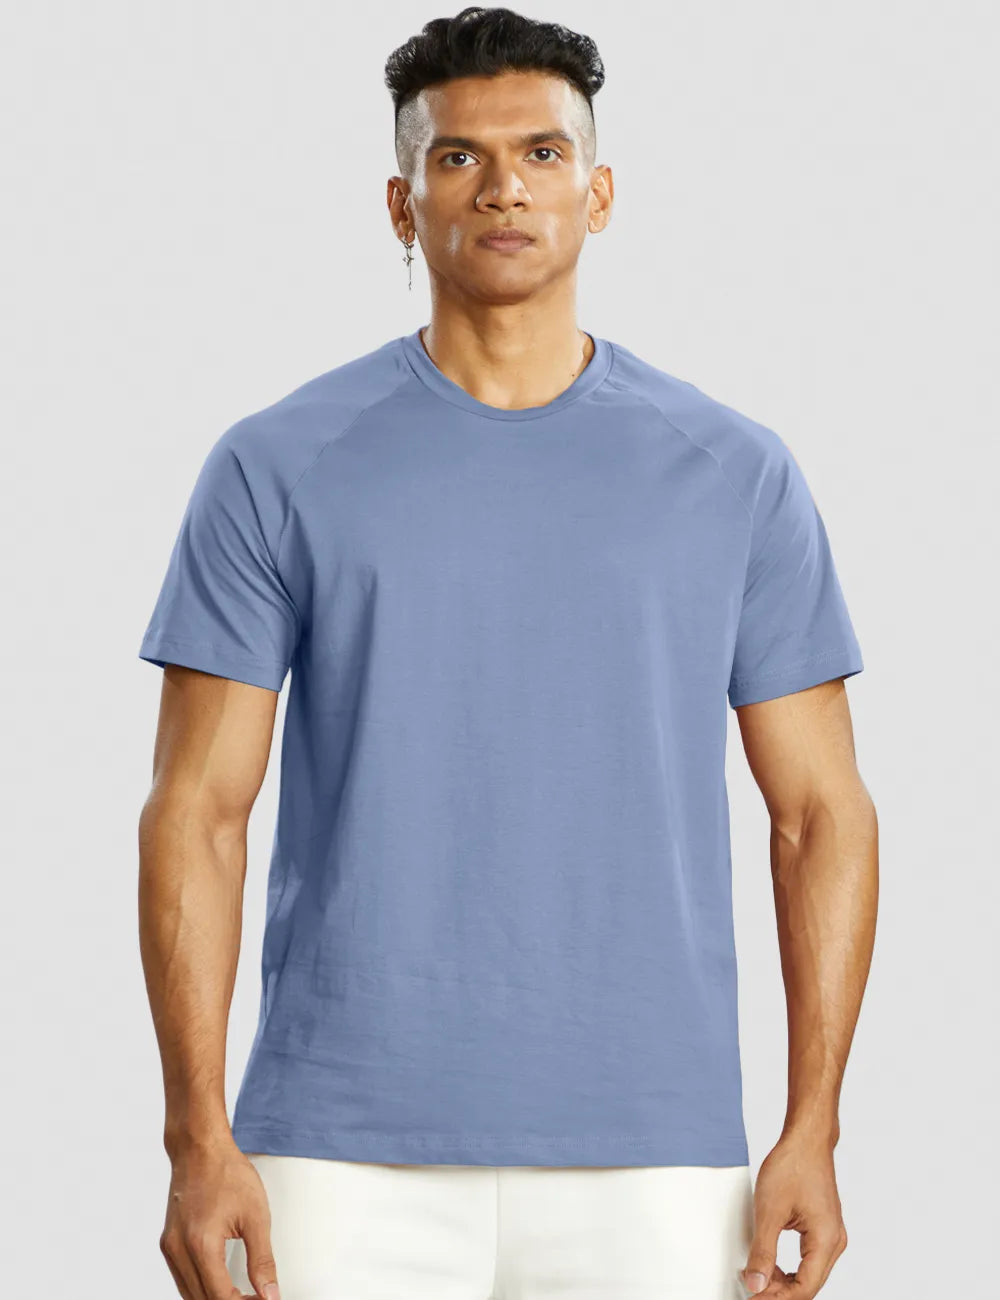 Muscle Fit T-shirt Men - Blue